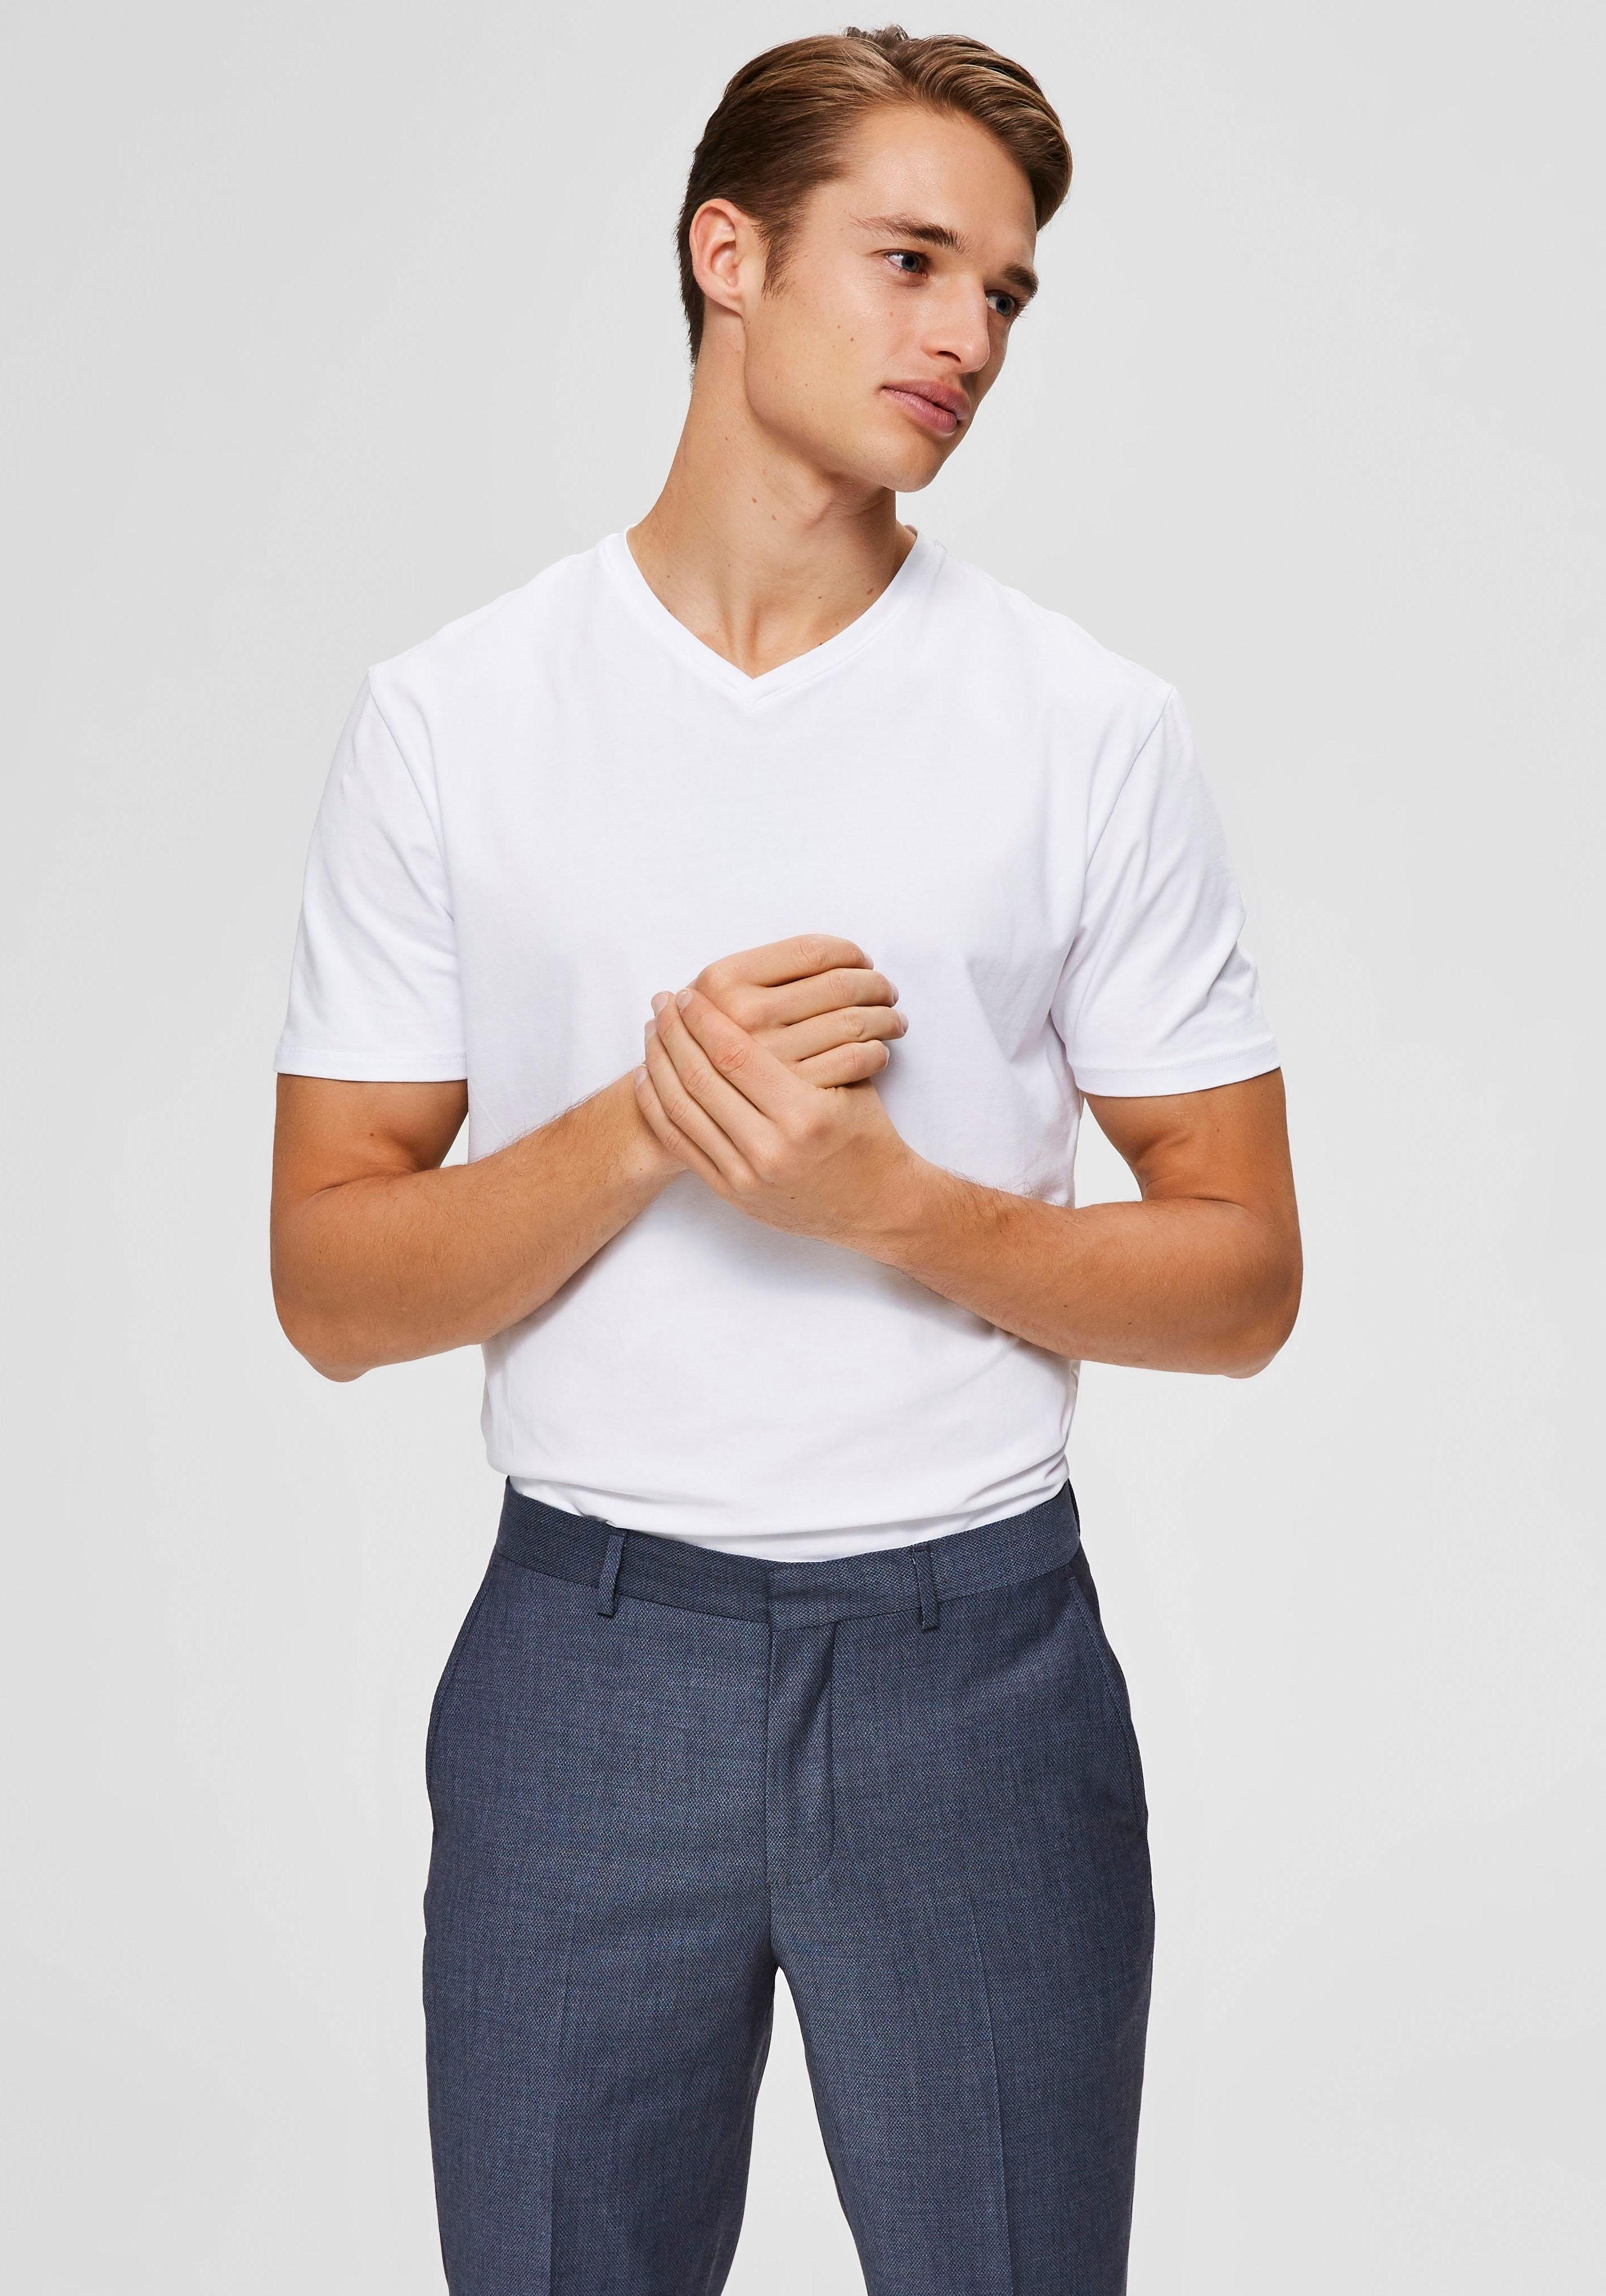 V-Shirt Basic SELECTED HOMME V-Shirt White